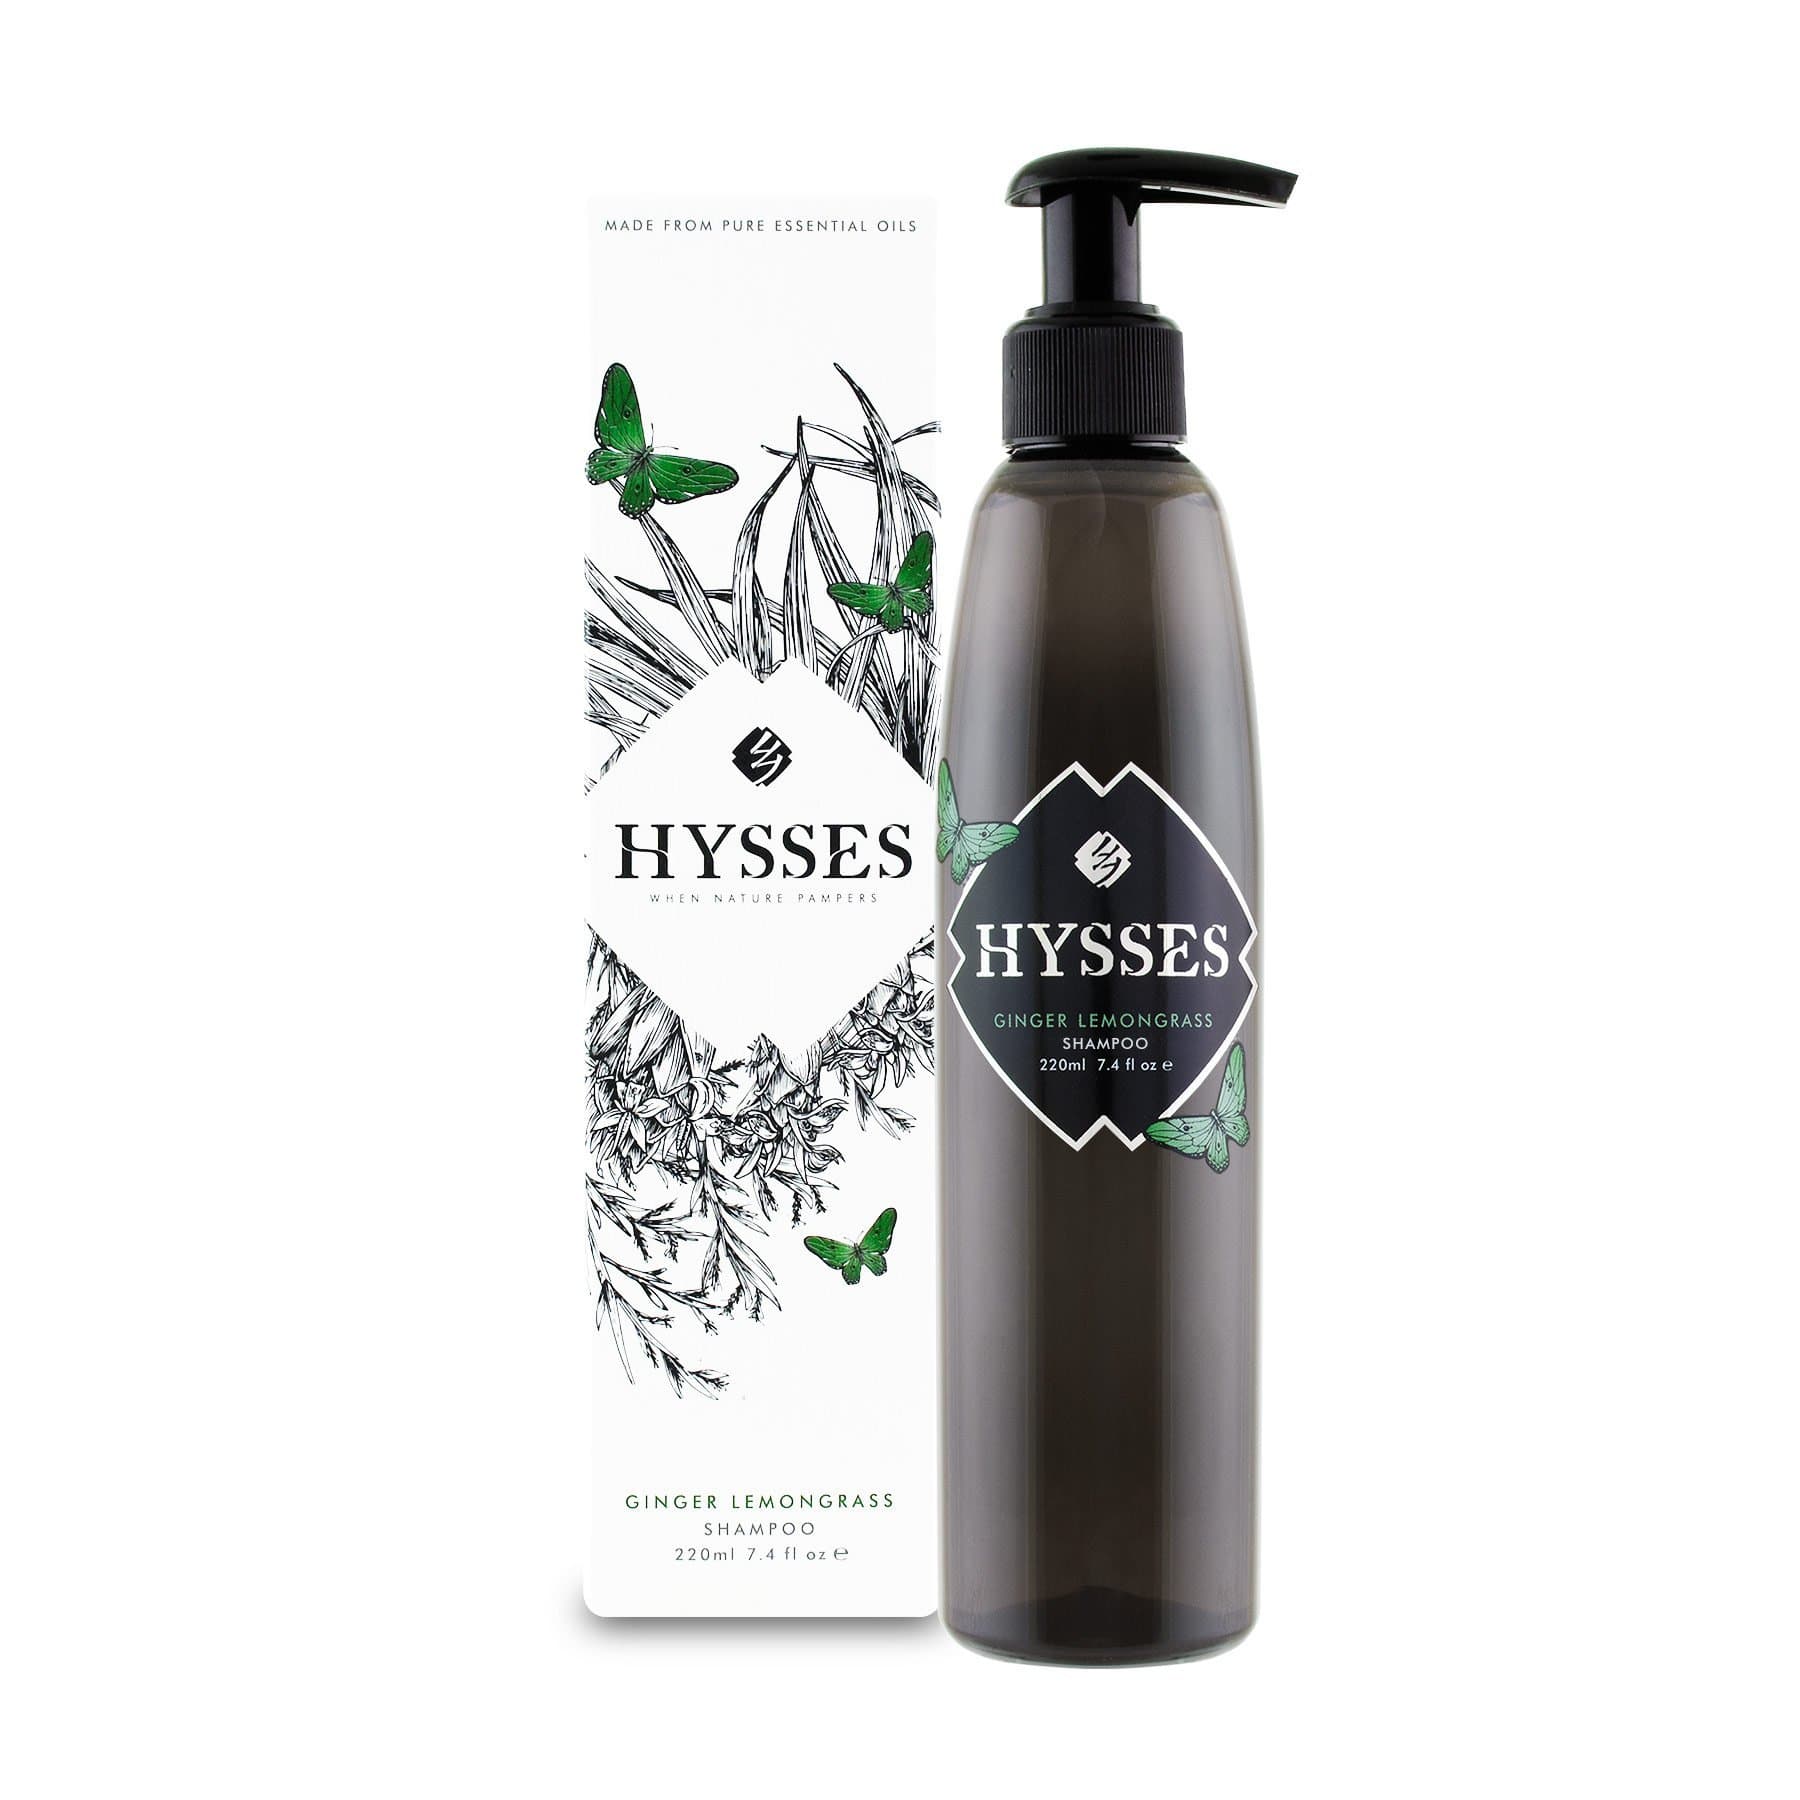 Hysses Hair Care 220ml Shampoo Ginger Lemongrass